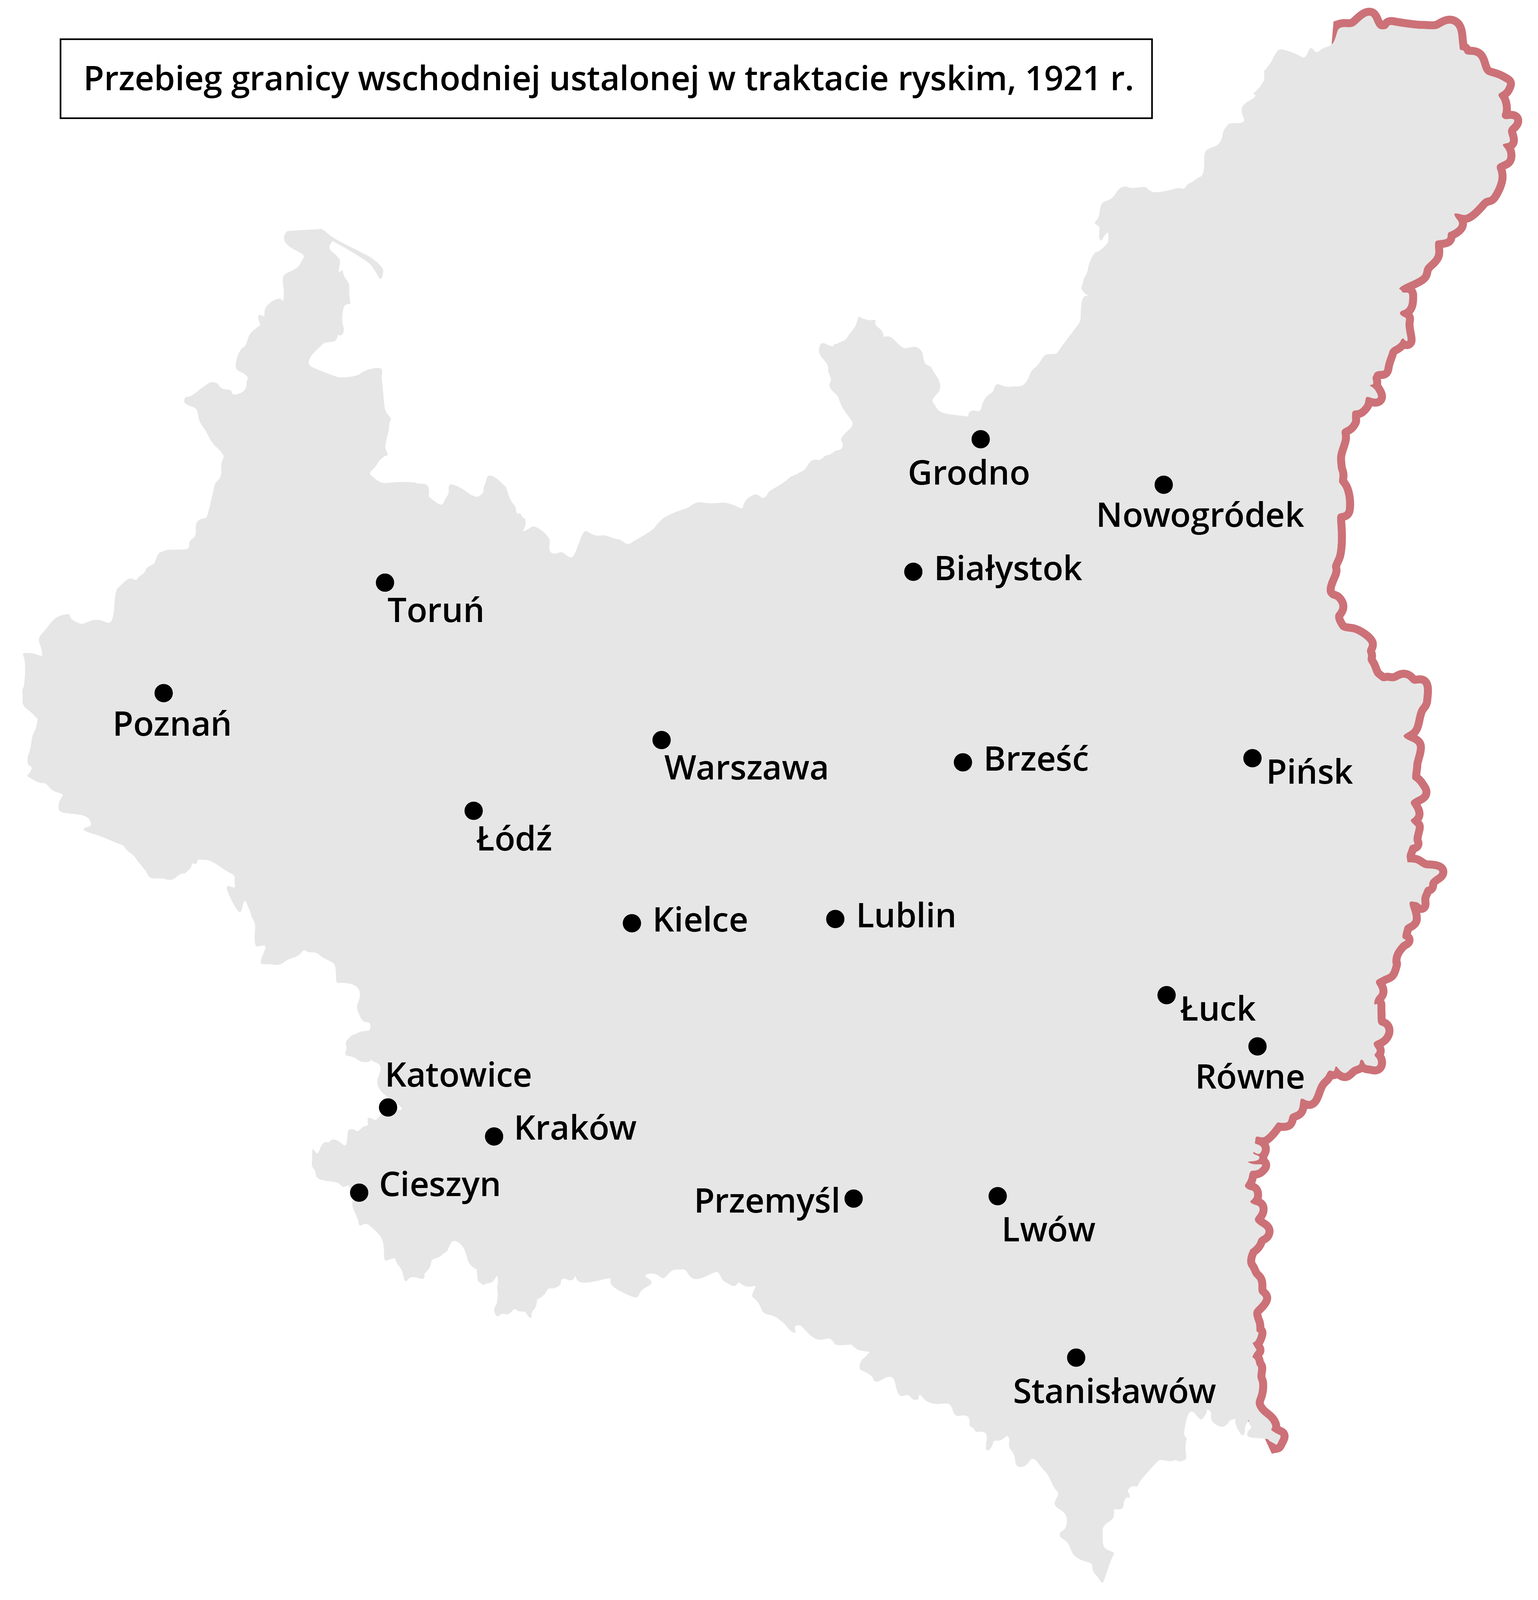 Ilustracja przedstawia mapę II Rzeczypospolitej Polskiej. Zaznaczony jest przebieg granicy wschodniej ustalonej w traktacie ryskim z 1921 roku.